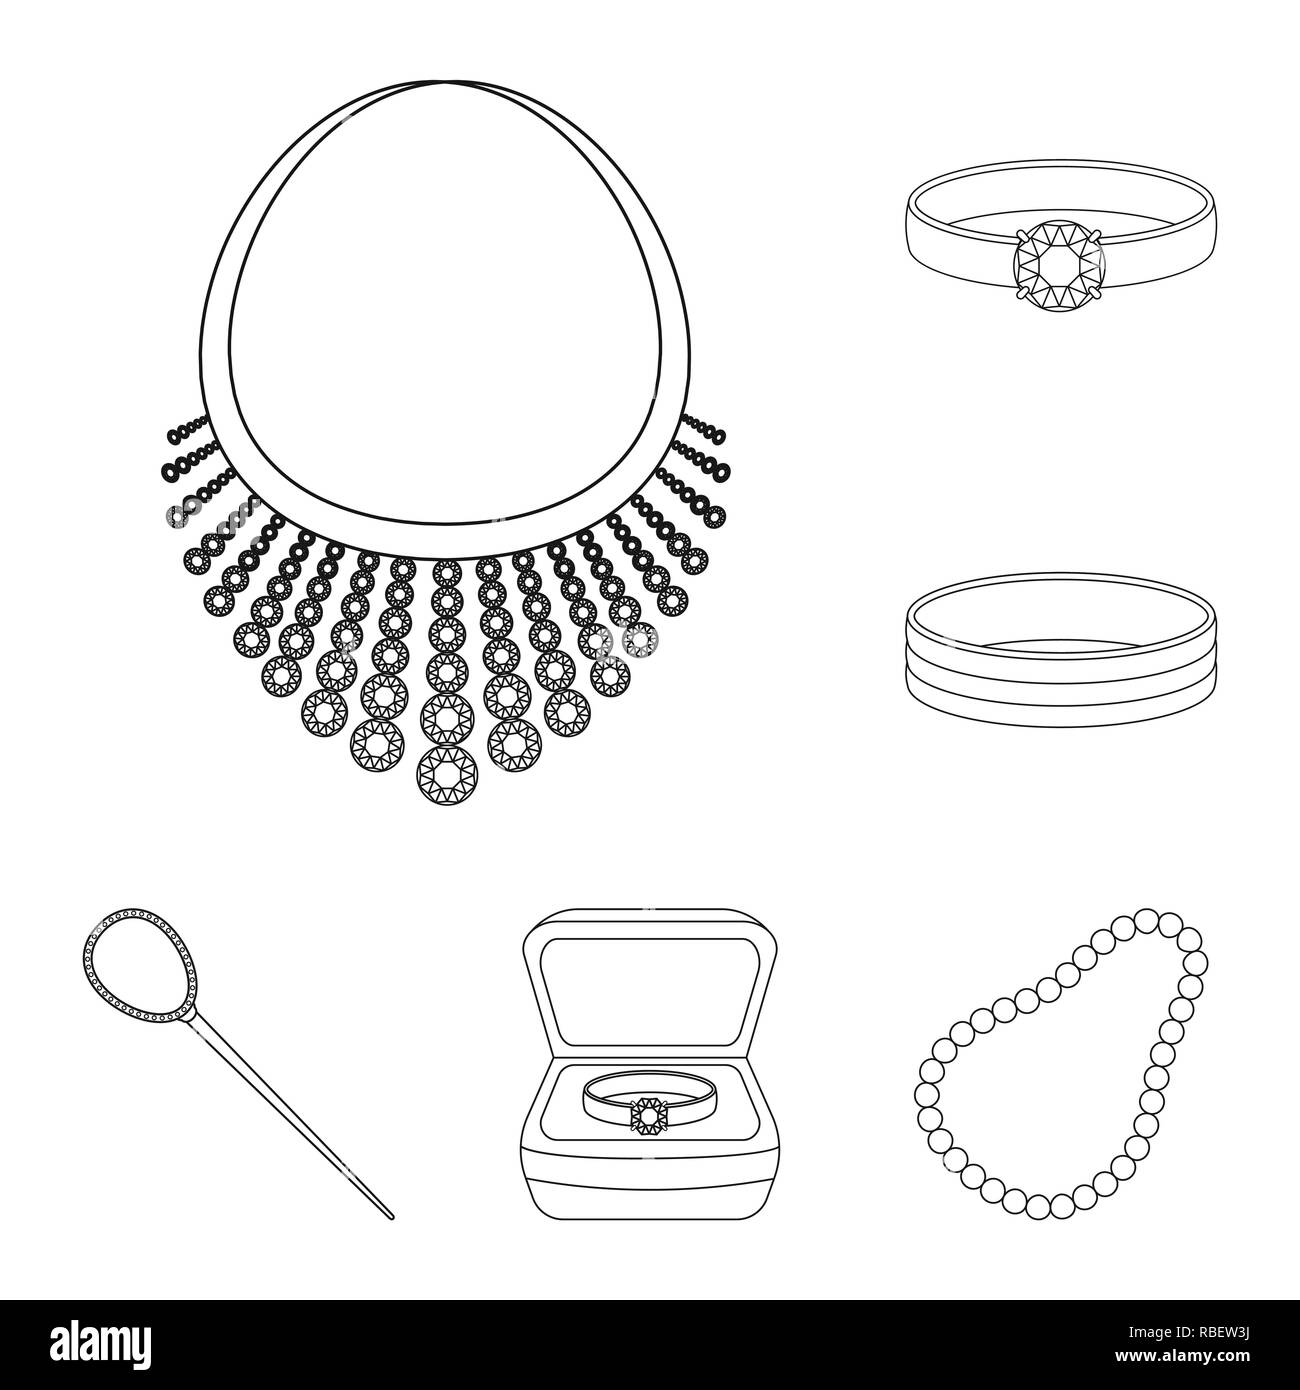 Boucles d'oreilles diamant Banque d'images noir et blanc - Page 3 - Alamy